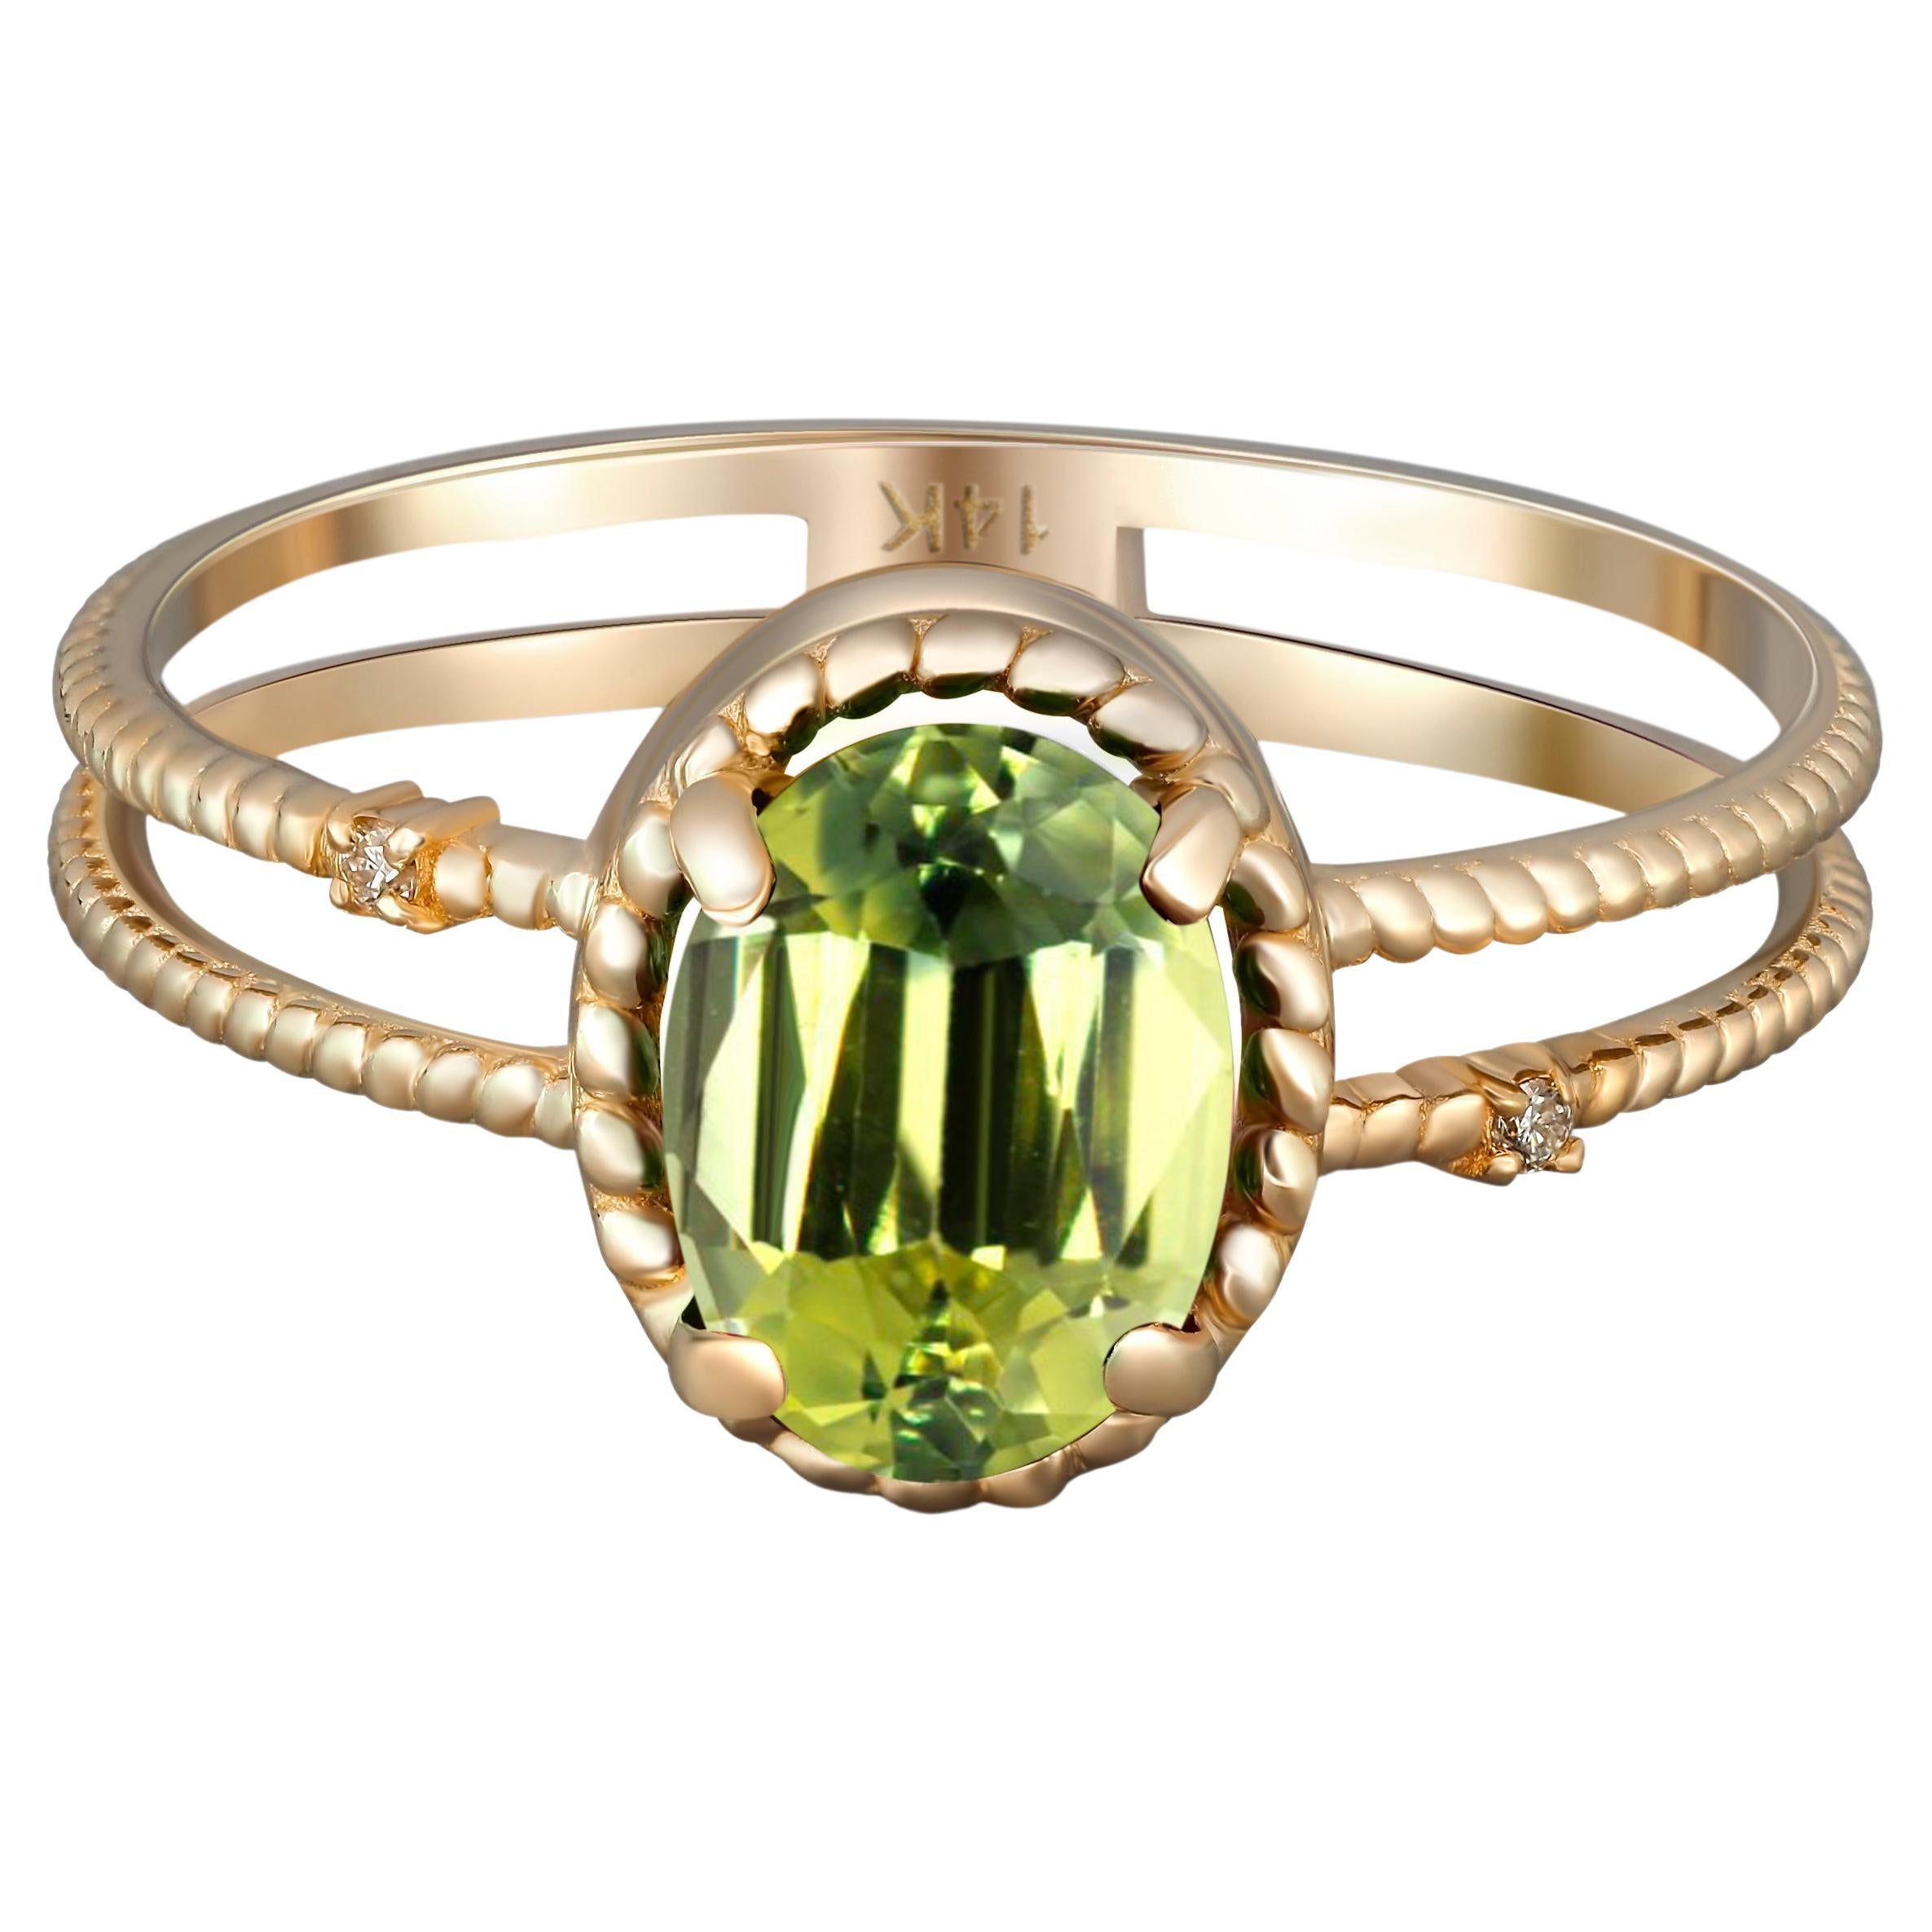 Peridot Band, Natural Peridot Ring, August Birthstone Ring, Green Band